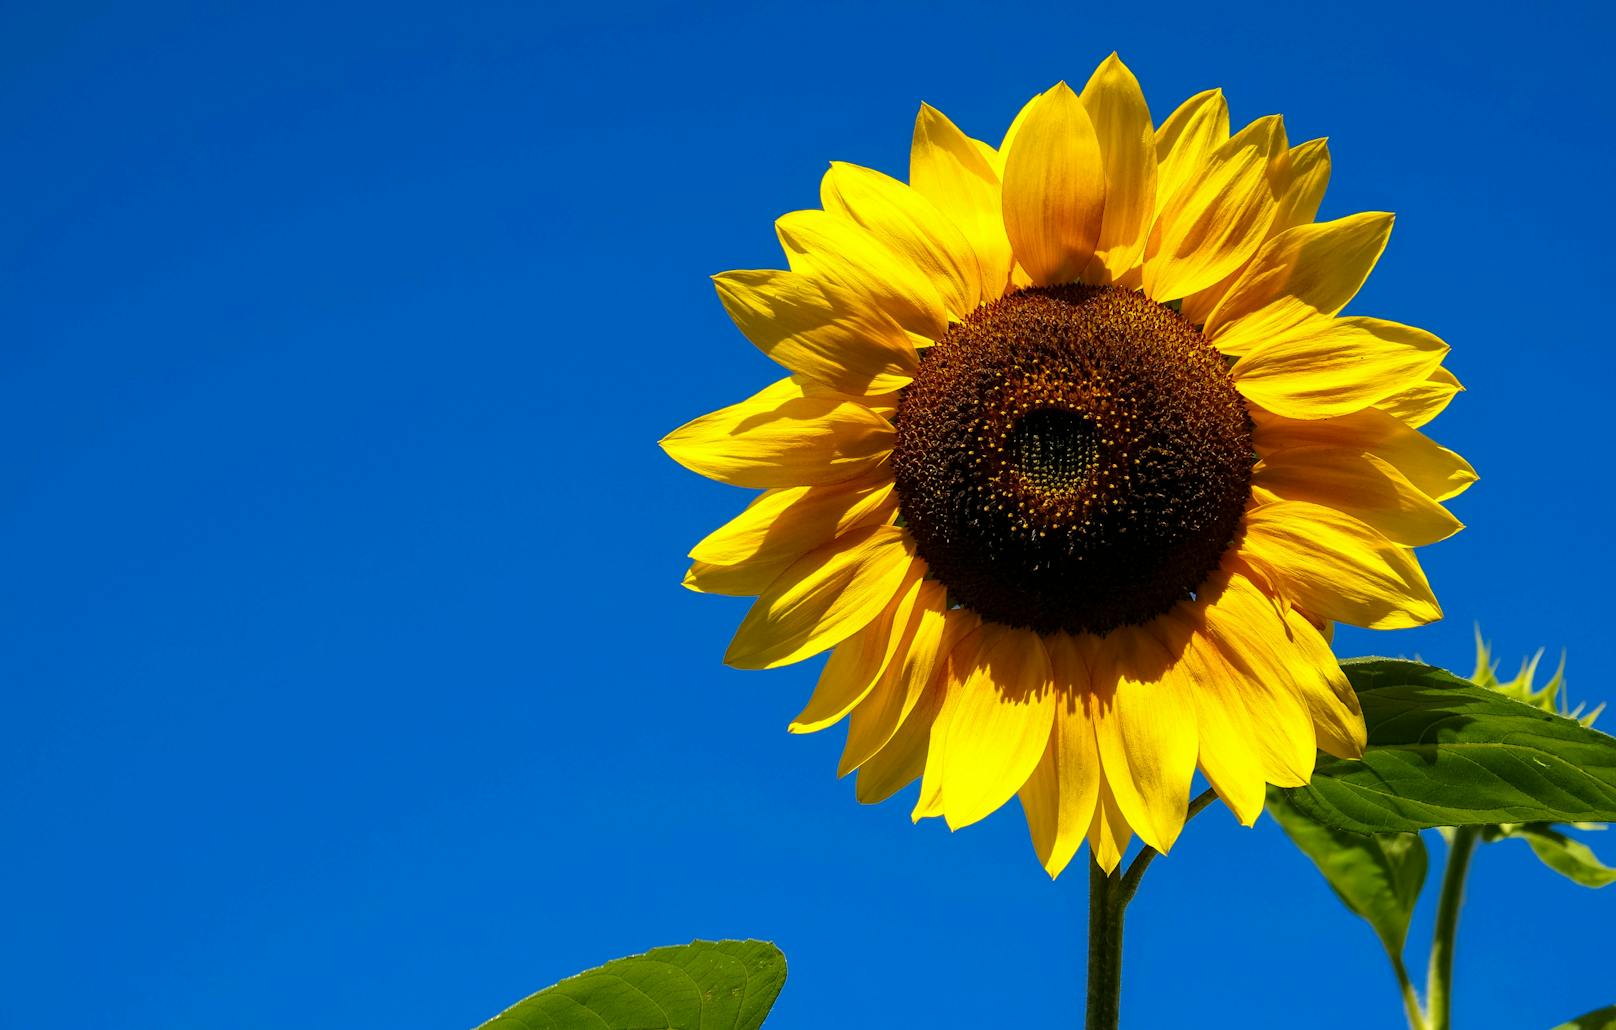 Eine Sonnenblume in Großbritannien hat fast eine Höhe von 7 Metern erreicht - und sie wächst weiter.